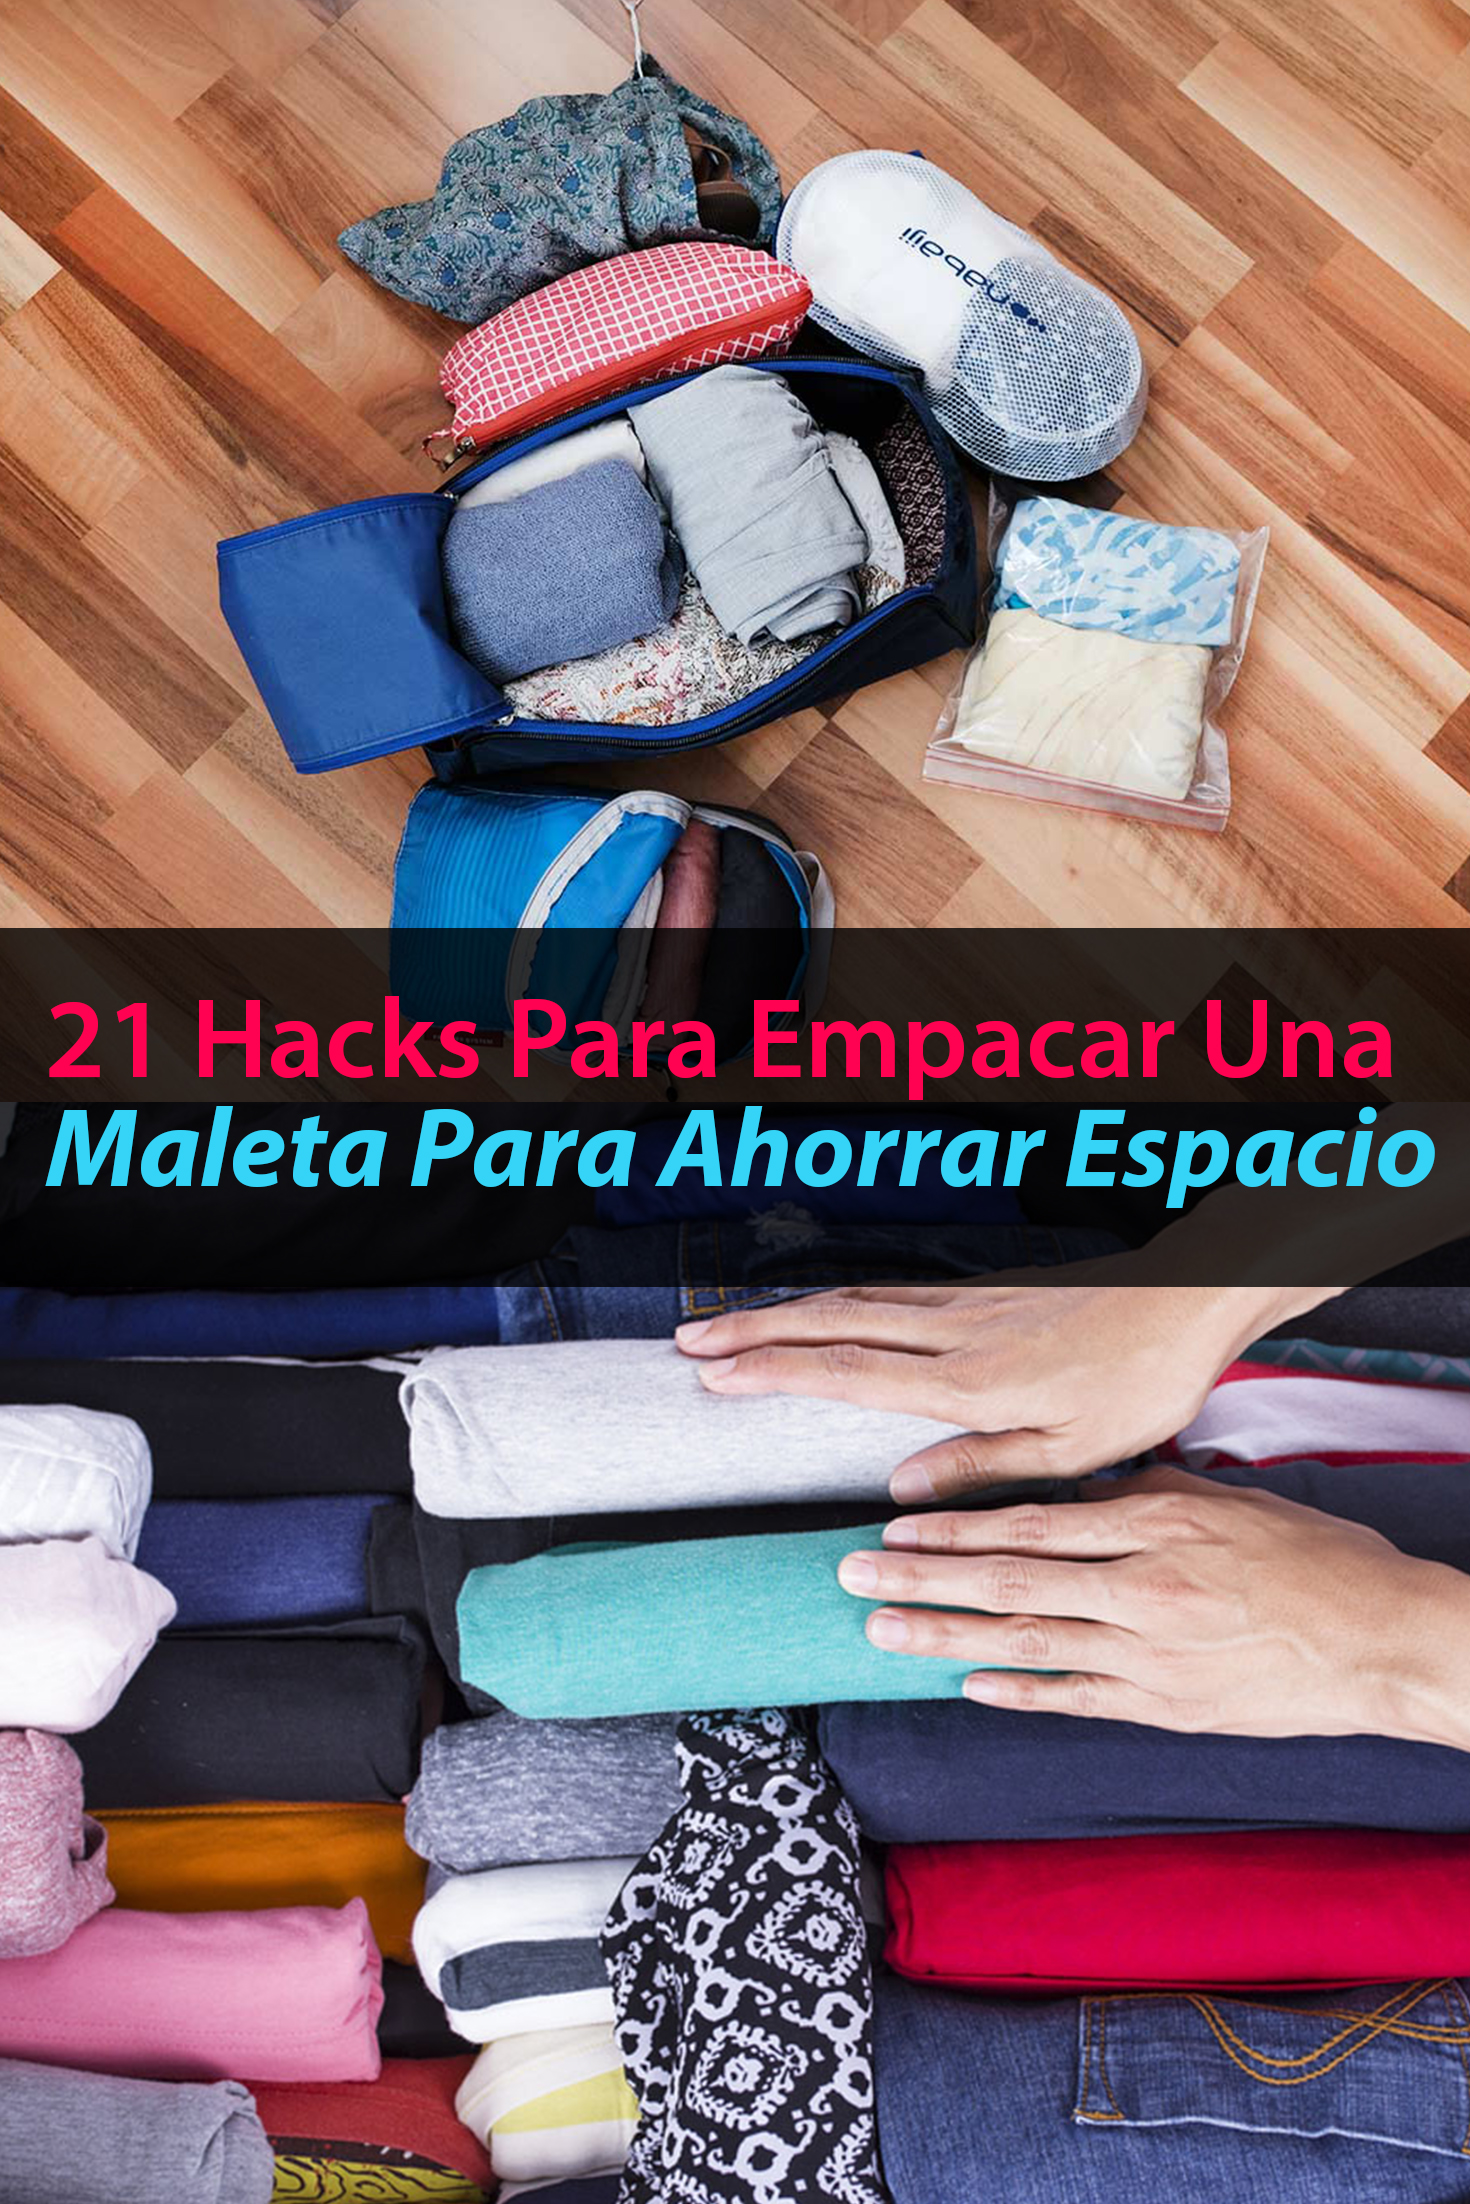 21 técninas para empacar y ahorrar espacio en tu maleta